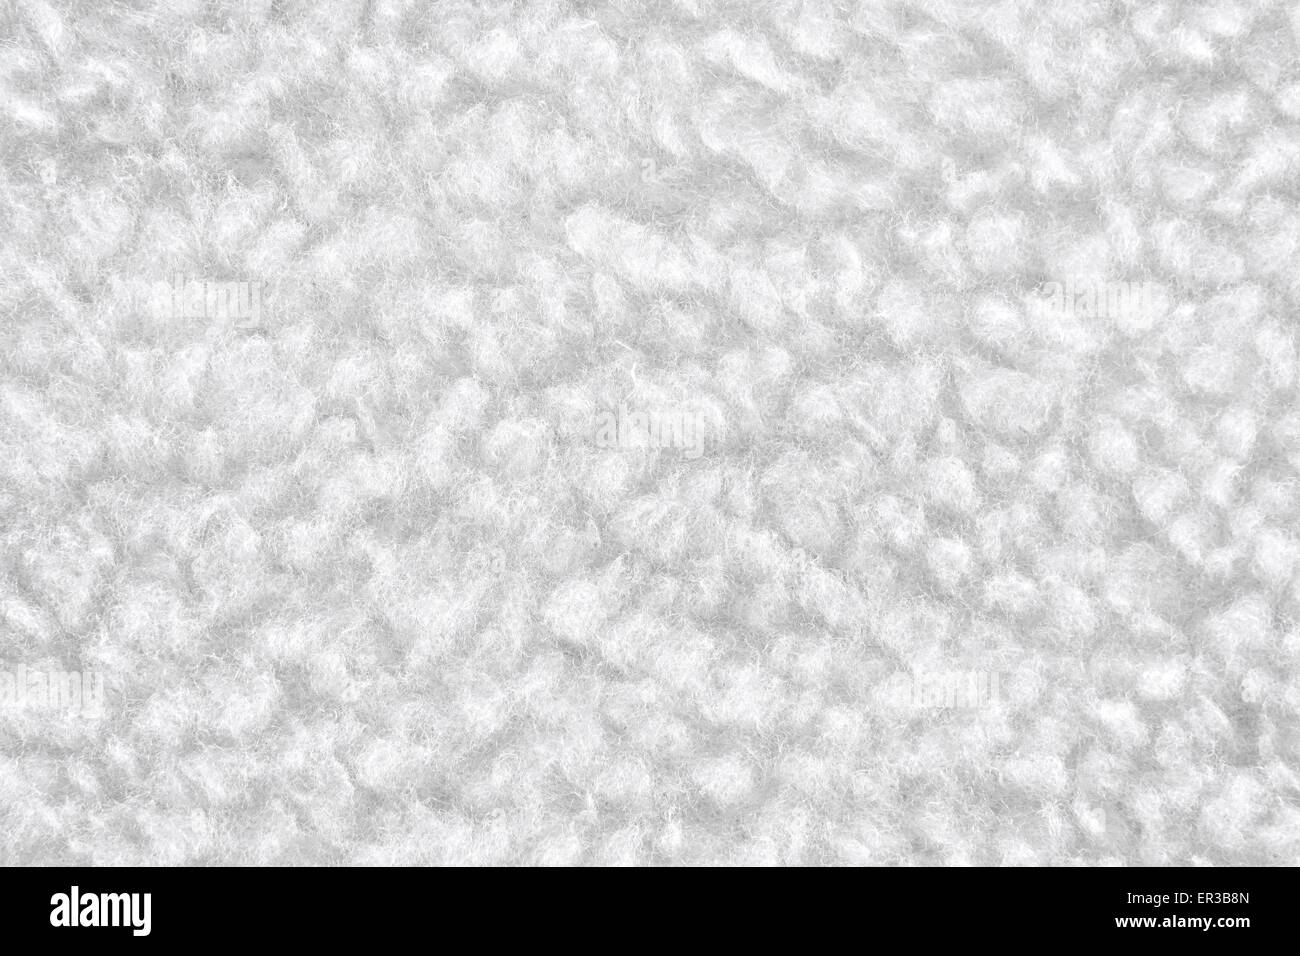 backround of white cotton texture Stock Photo